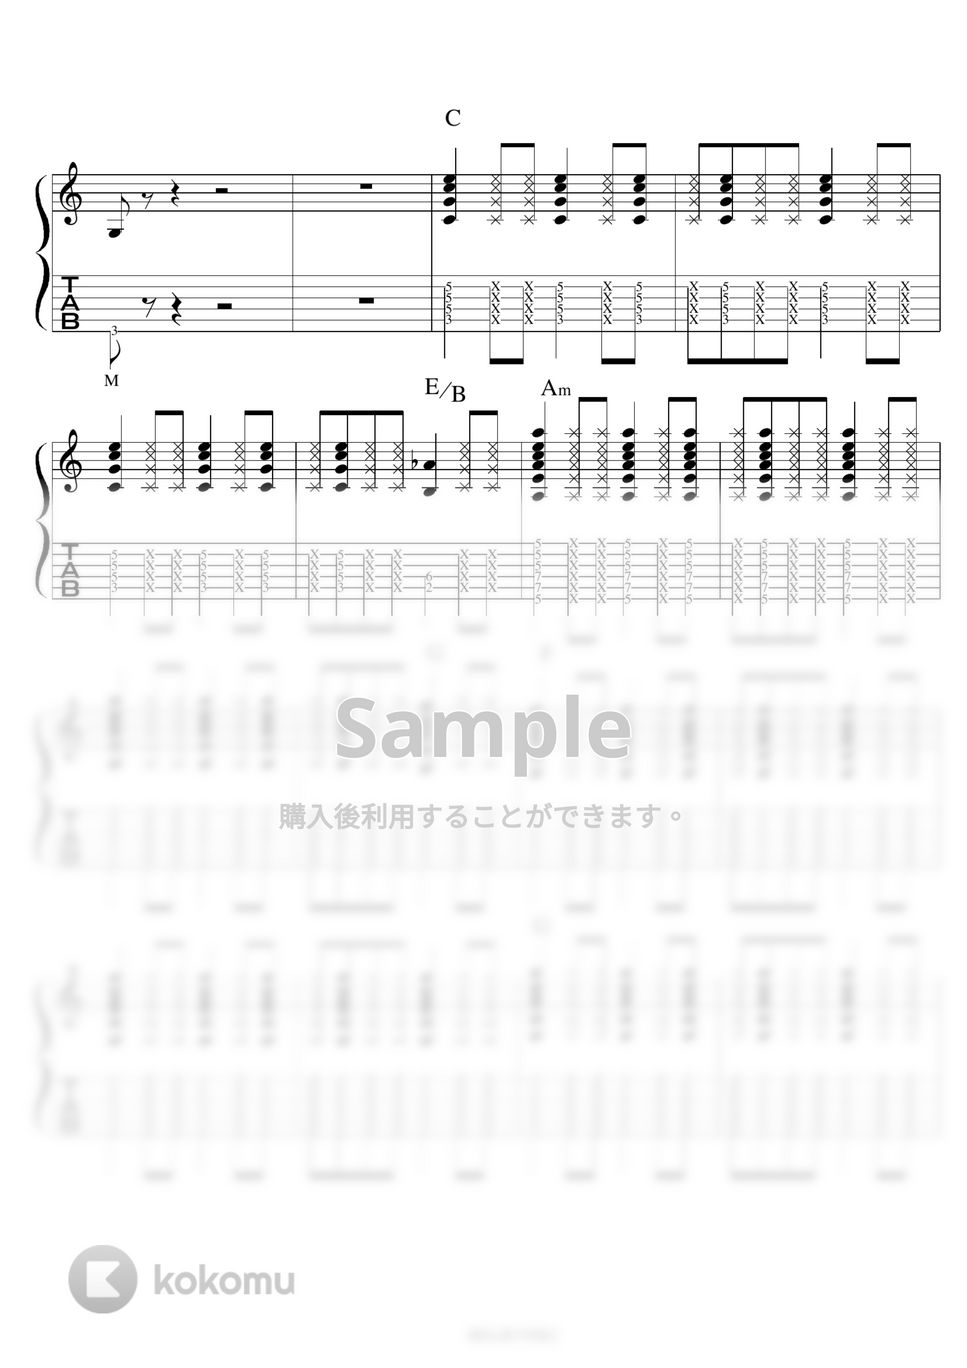 ken yokoyama - Believer ギター演奏動画付TAB譜 by バイトーン音楽教室